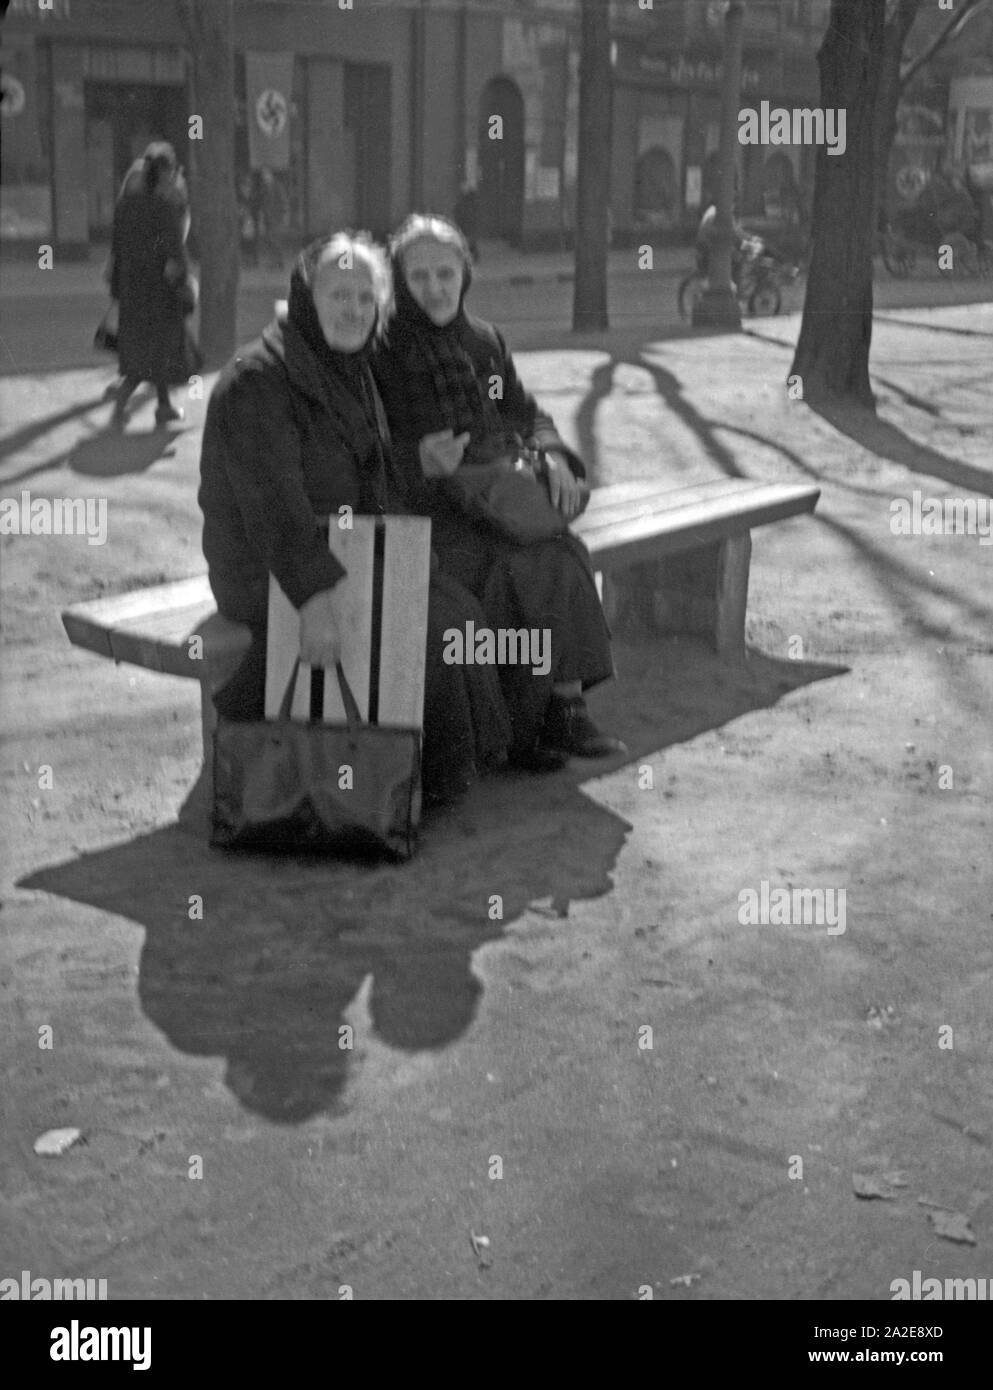 Zwei alte Damen bei einer Ruhepause auf dem Paradeplatz in Königsberg, Ostpreußen 1930er Jahre. Zwei ältere Damen mit einer Unterbrechung am Paradeplatz Quadrat in Königsberg, Ostpreußen, 1930er Jahre. Stockfoto